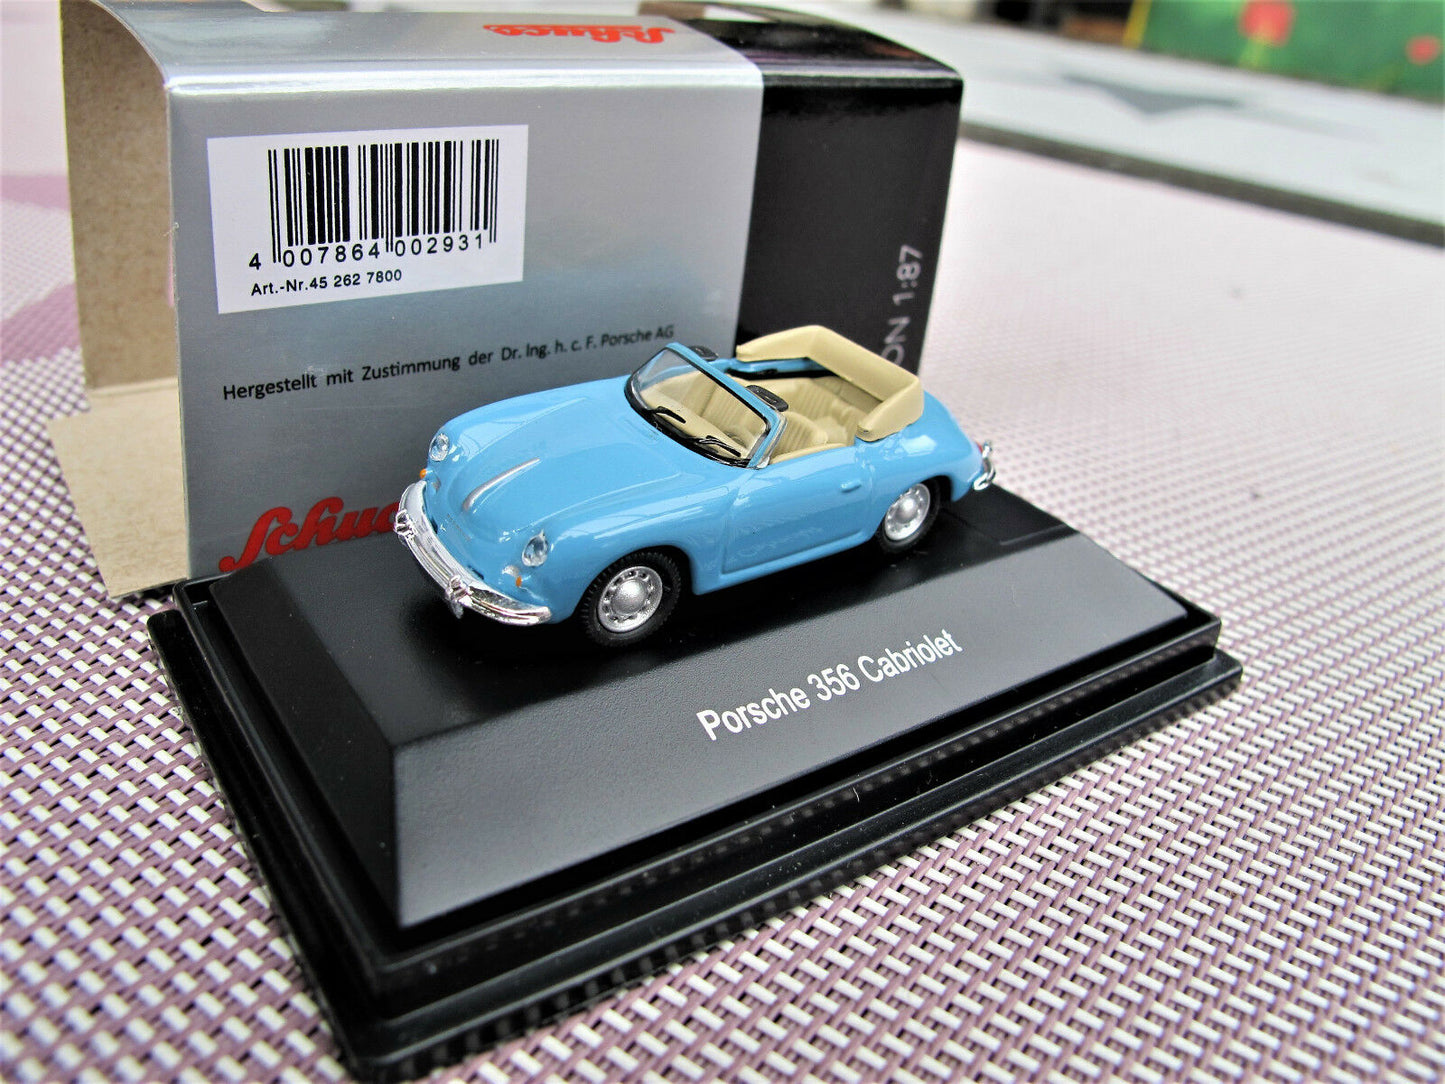 Schuco 1:87 Porsche 356 Cabrio blue 452627800